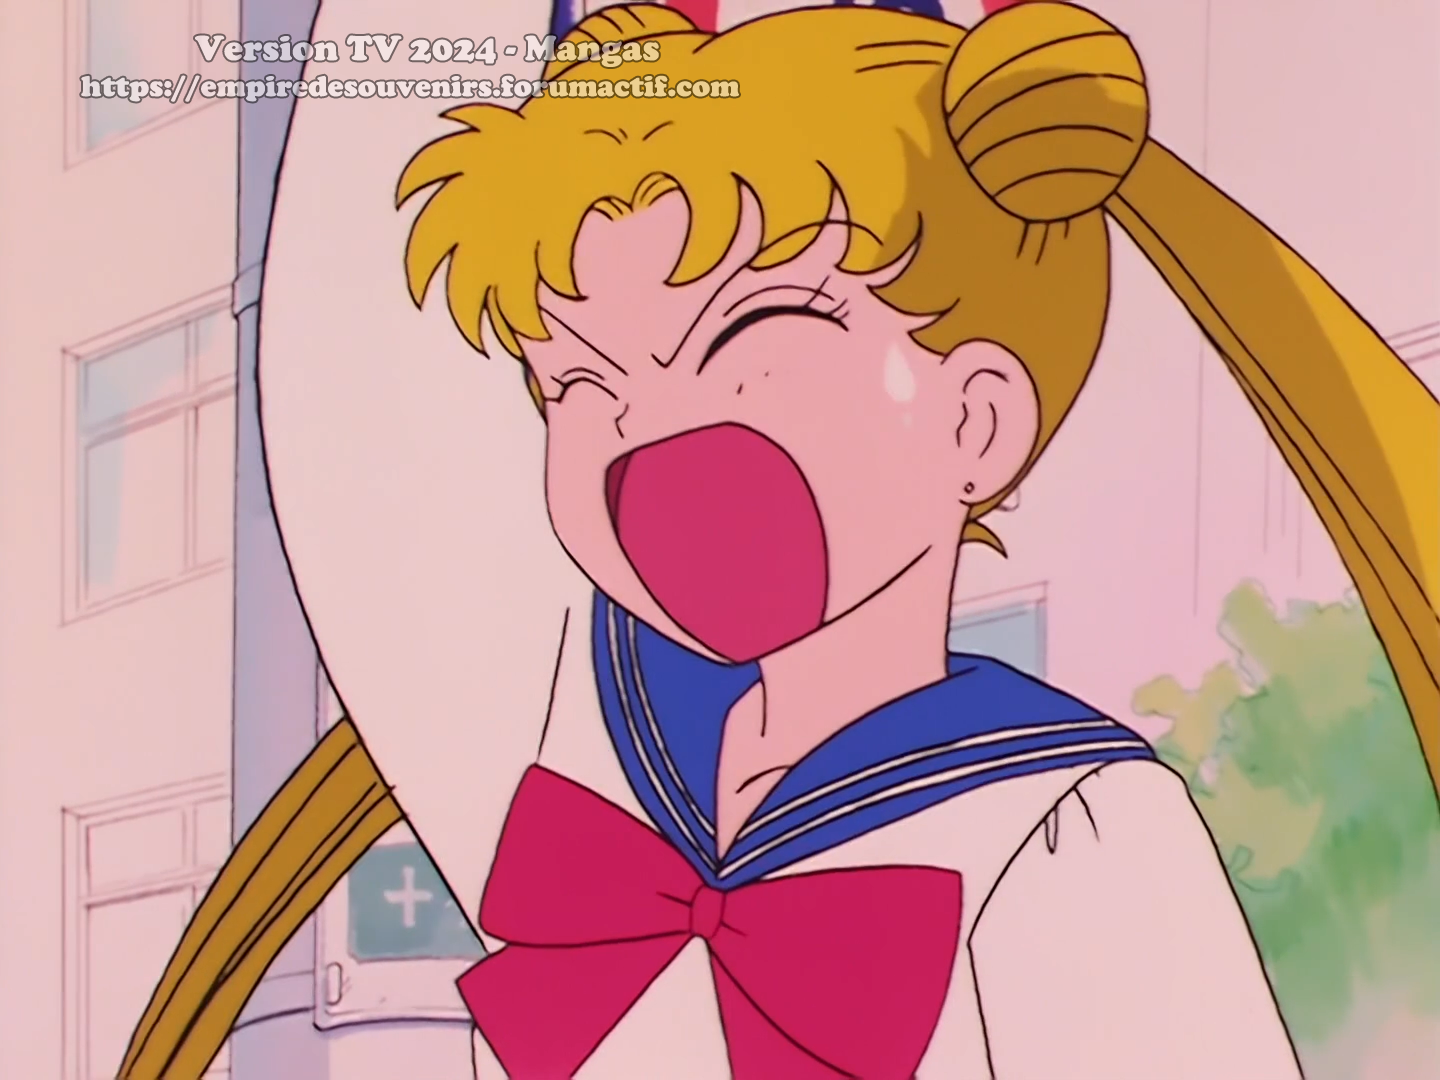 Sailor Moon sur Mangas ! 3ffw